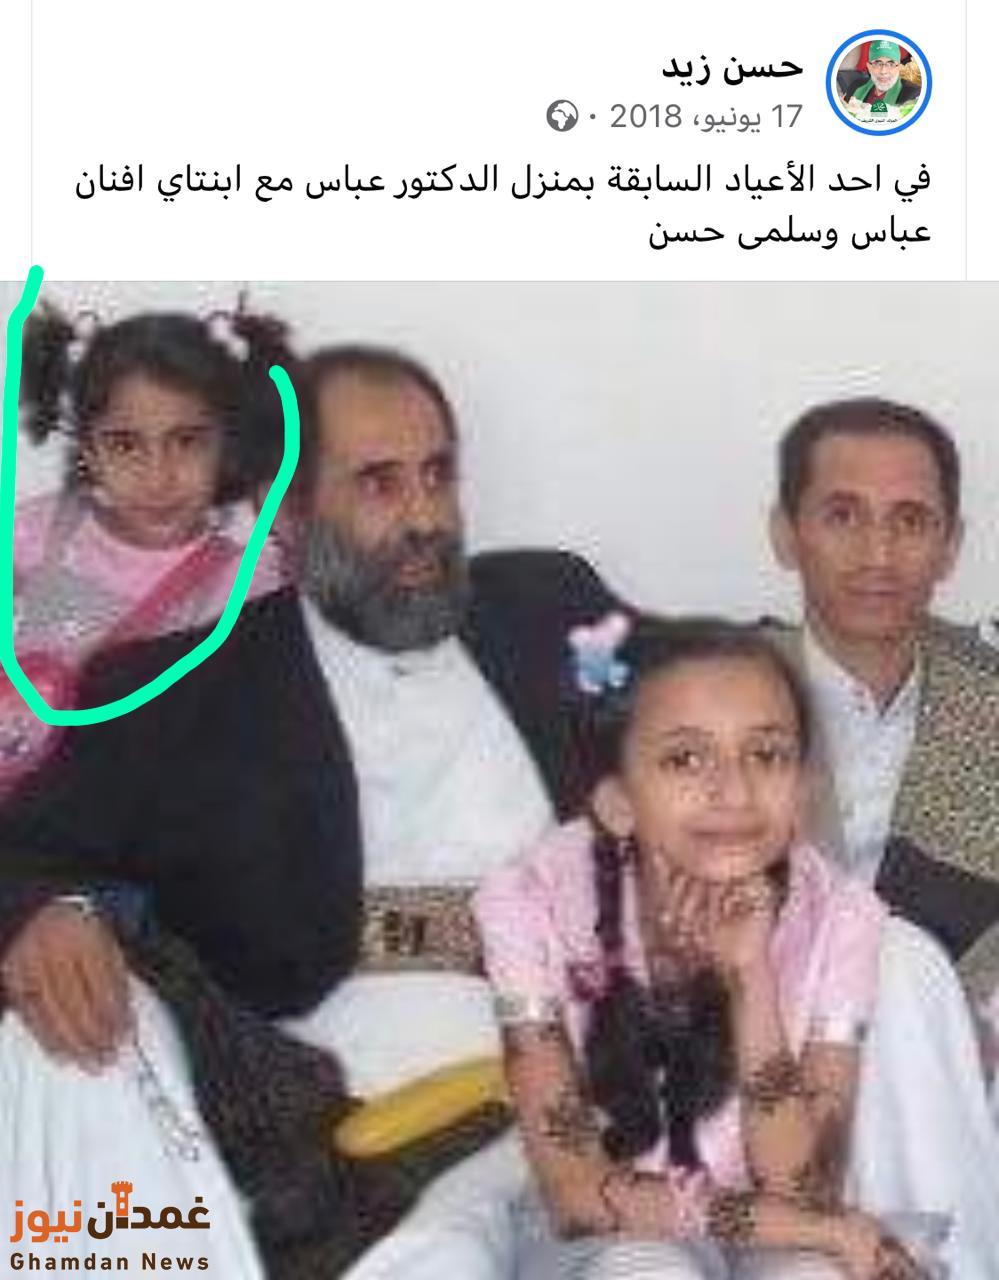 اول صورة لطفلة القيادي الحوثي " حسن زيد " وهو معها قبل مقتله بساعات .. وهذا هو اسمها الحقيقي